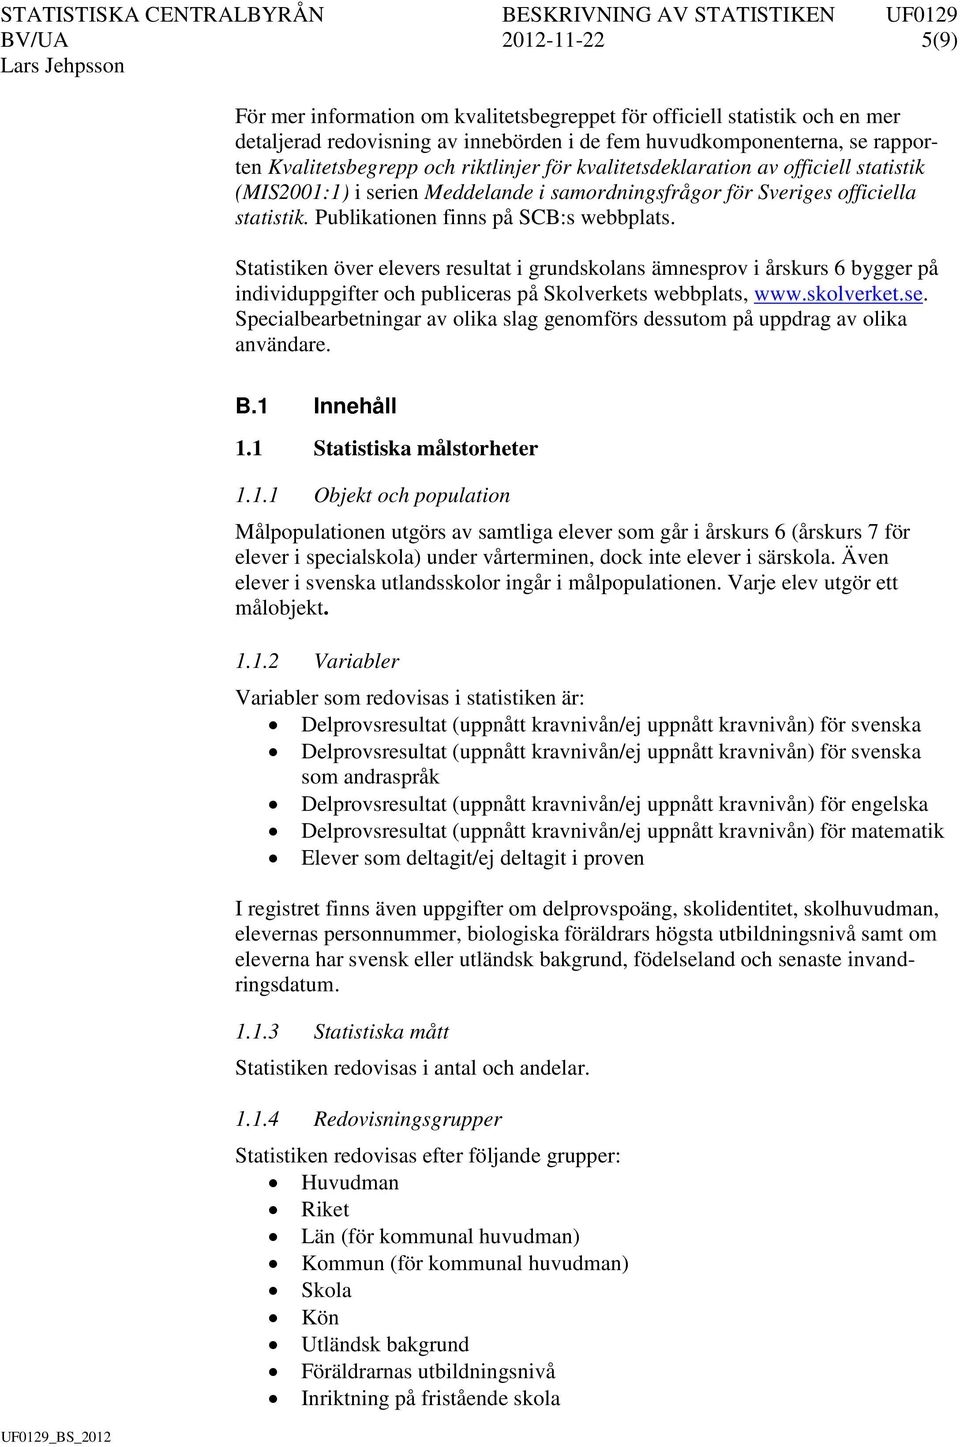 Statistiken över elevers resultat i grundskolans ämnesprov i årskurs 6 bygger på individuppgifter och publiceras på Skolverkets webbplats, www.skolverket.se.